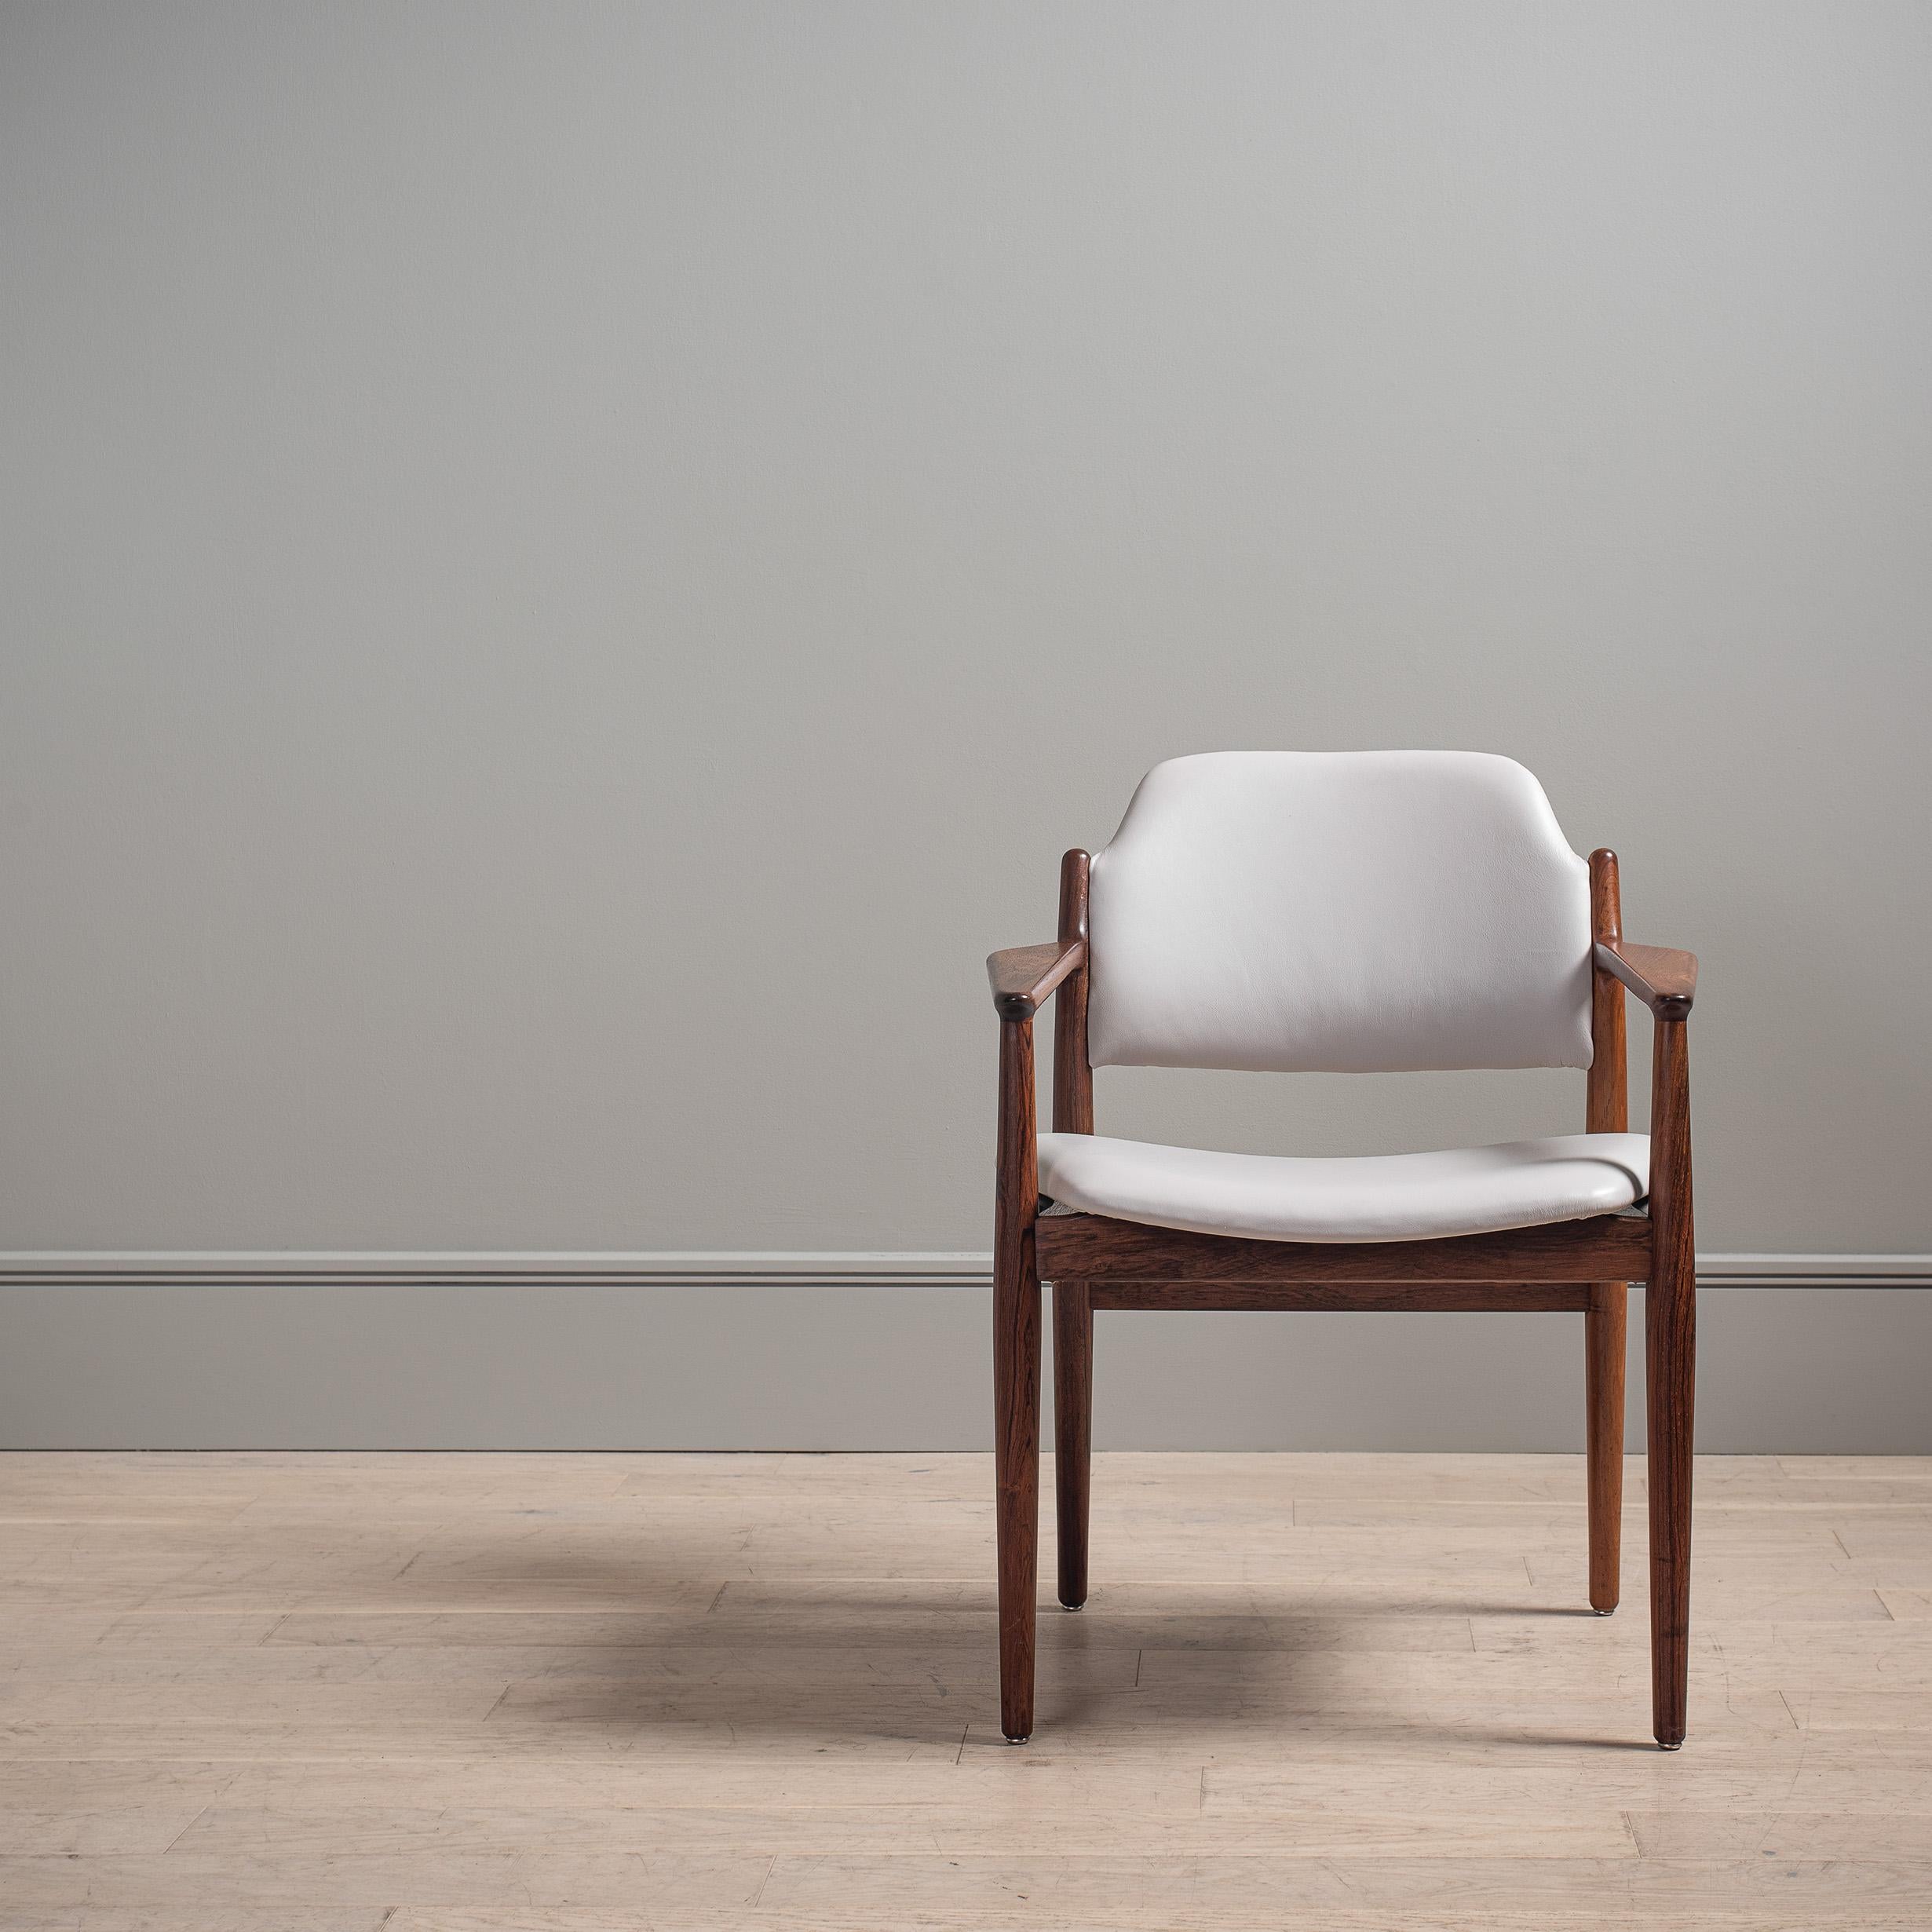 Wunderschöner, von Arne Vodder entworfener Sessel / Schreibtischstuhl von Sibast, um 1960, Dänemark. Vollständig neu gepolstert mit stahlweißem italienischem Leder. Äußerst komfortabel und ein hervorragendes Design. Schöner Zustand.